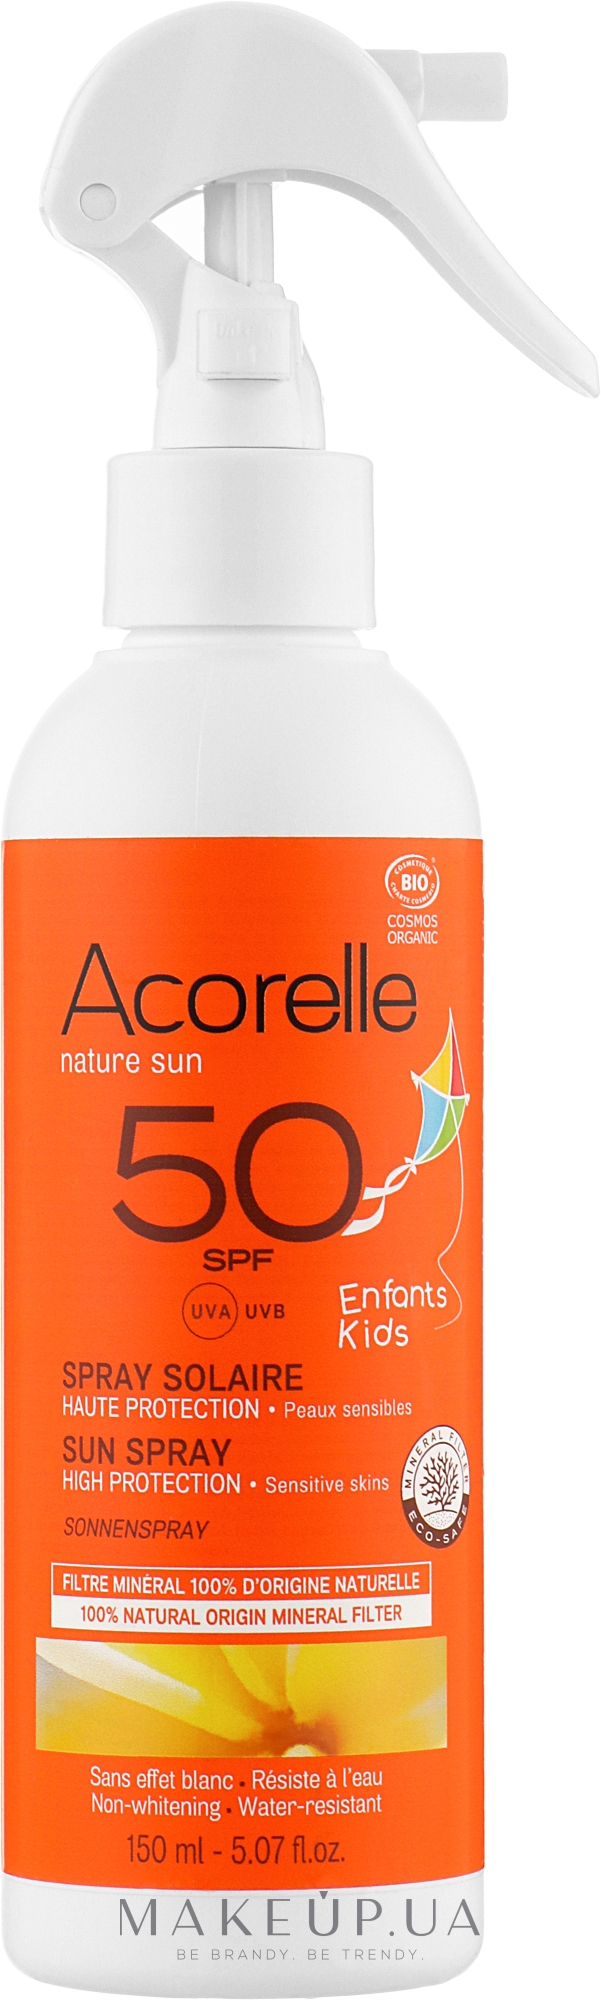 Сонцезахисний спрей для дітей, органічний - Acorelle Natur Sun Spray Solaire High Protection SPF50 — фото 150ml